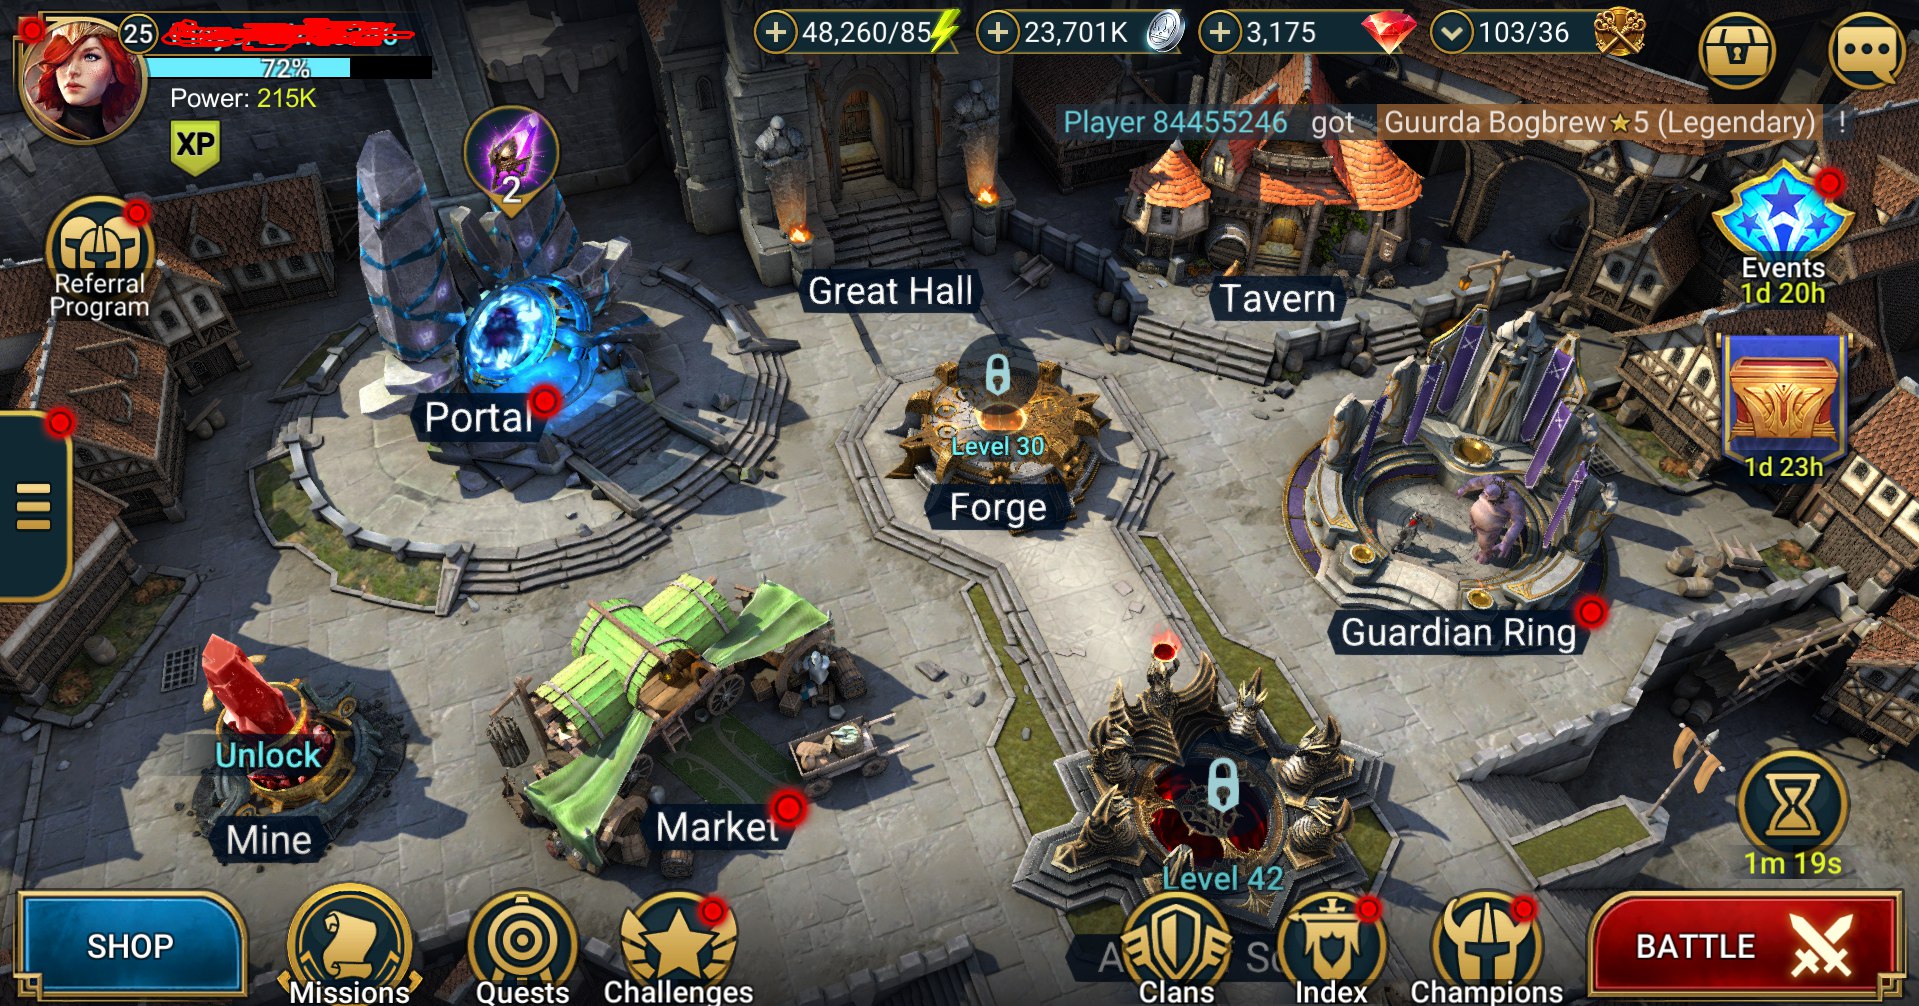 Starter : Mythical Hero - Arbais the Stonethorn : 48k energi / 23 juta koin / Arix + 12 Login Legendaries